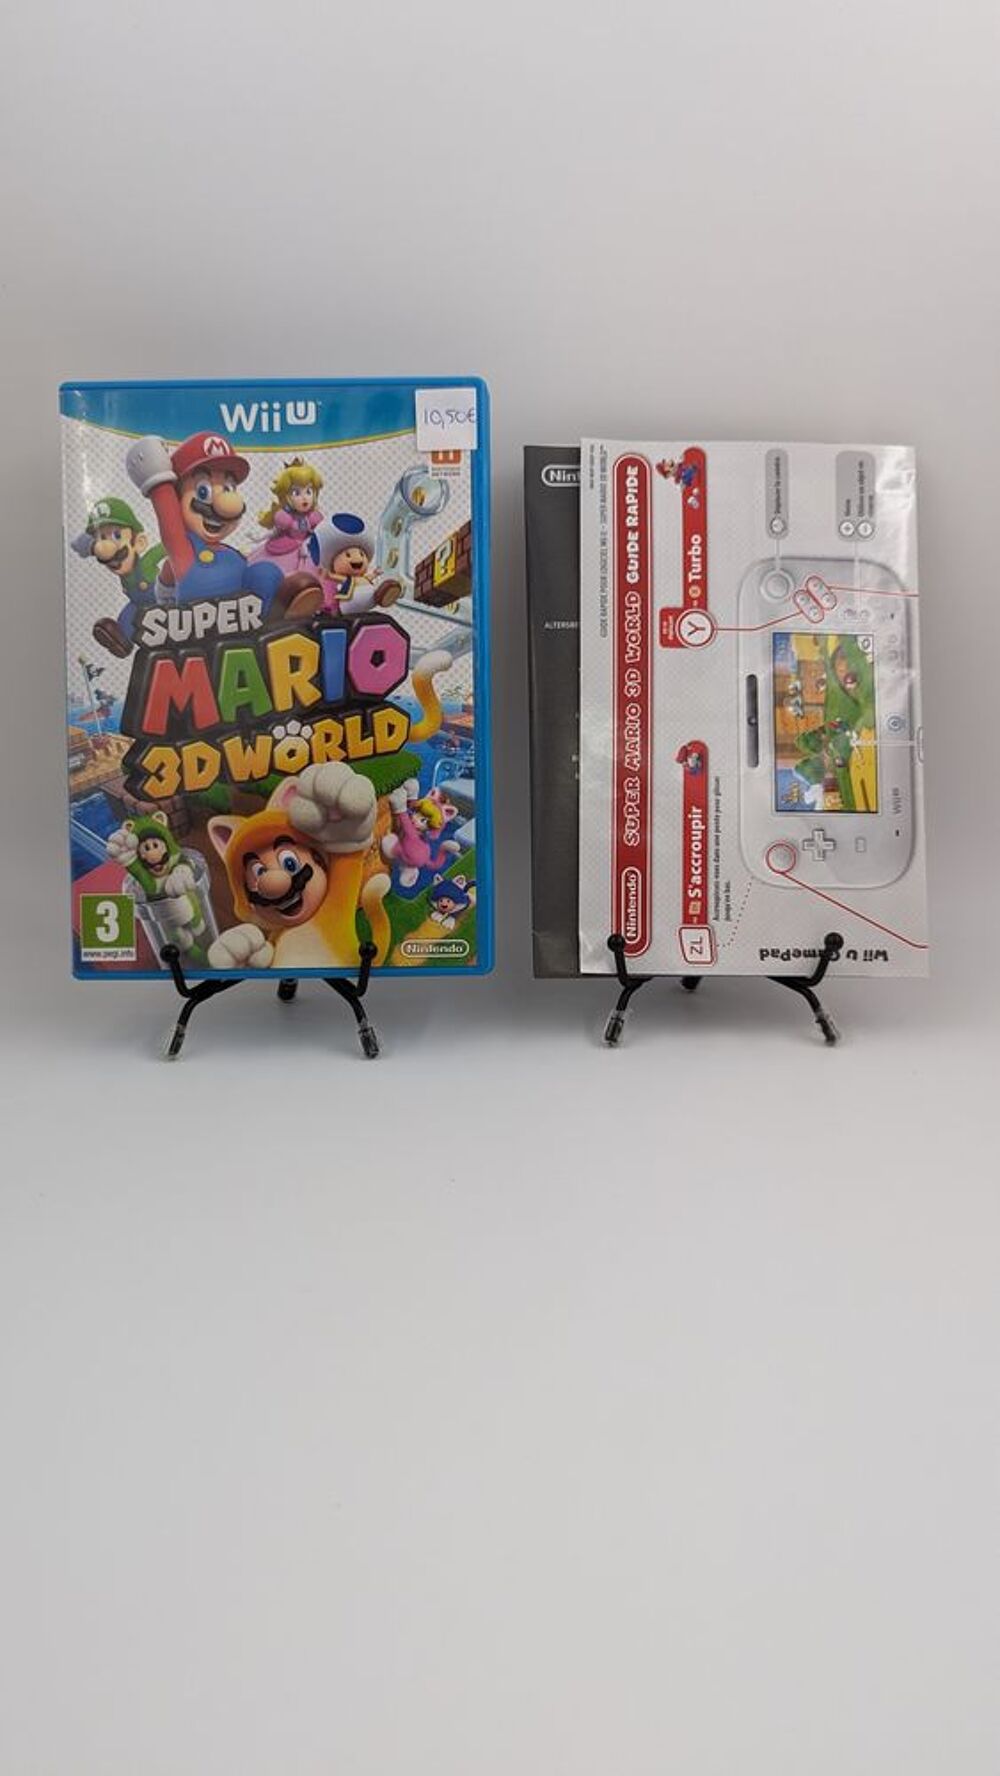 Jeu Nintendo Wii U Super Mario 3D World en boite, complet Consoles et jeux vidos